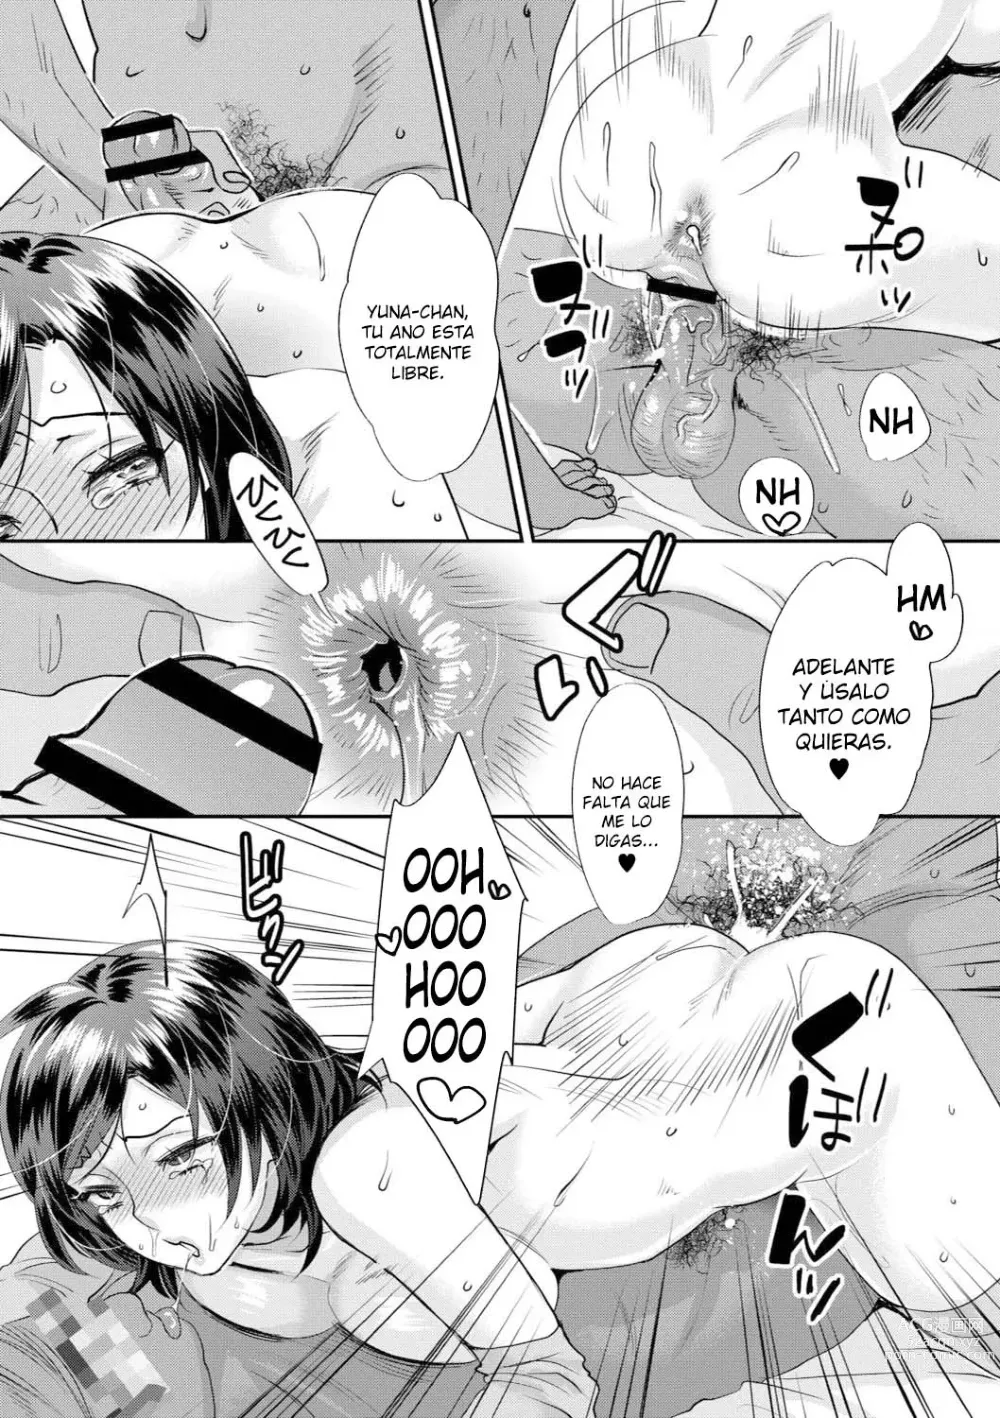 Page 175 of manga Sarasare Aidol